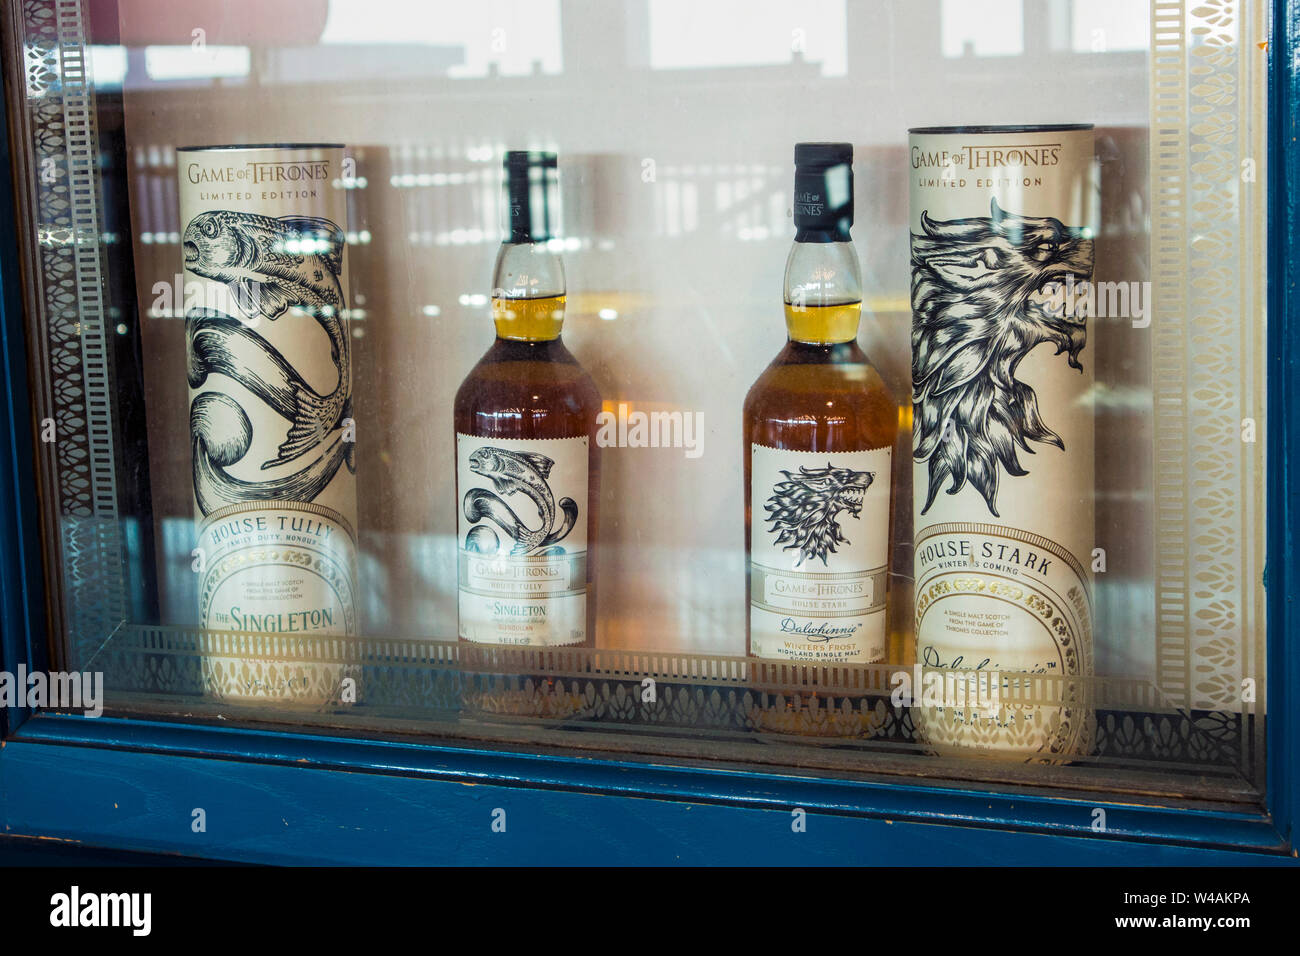 Helsinki, Vantaa/Finnland-21 Jul 2019: Spiel der Throne Thema Whisky trinken auf Anzeige Fenster von Talisker eingestellt. Stockfoto